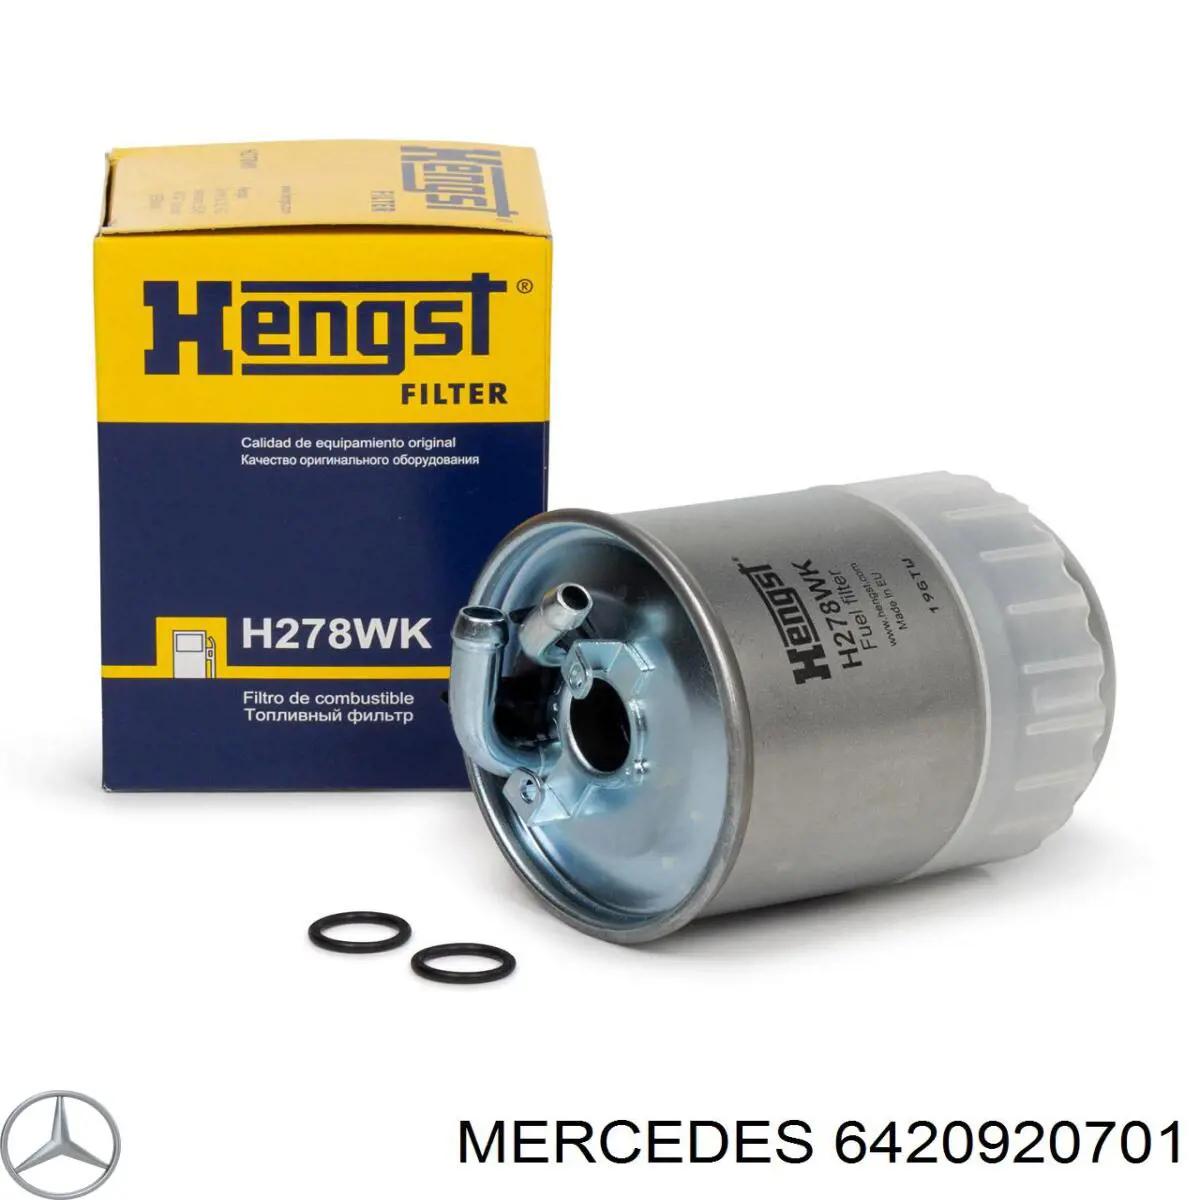 6420920701 Mercedes filtro de combustible